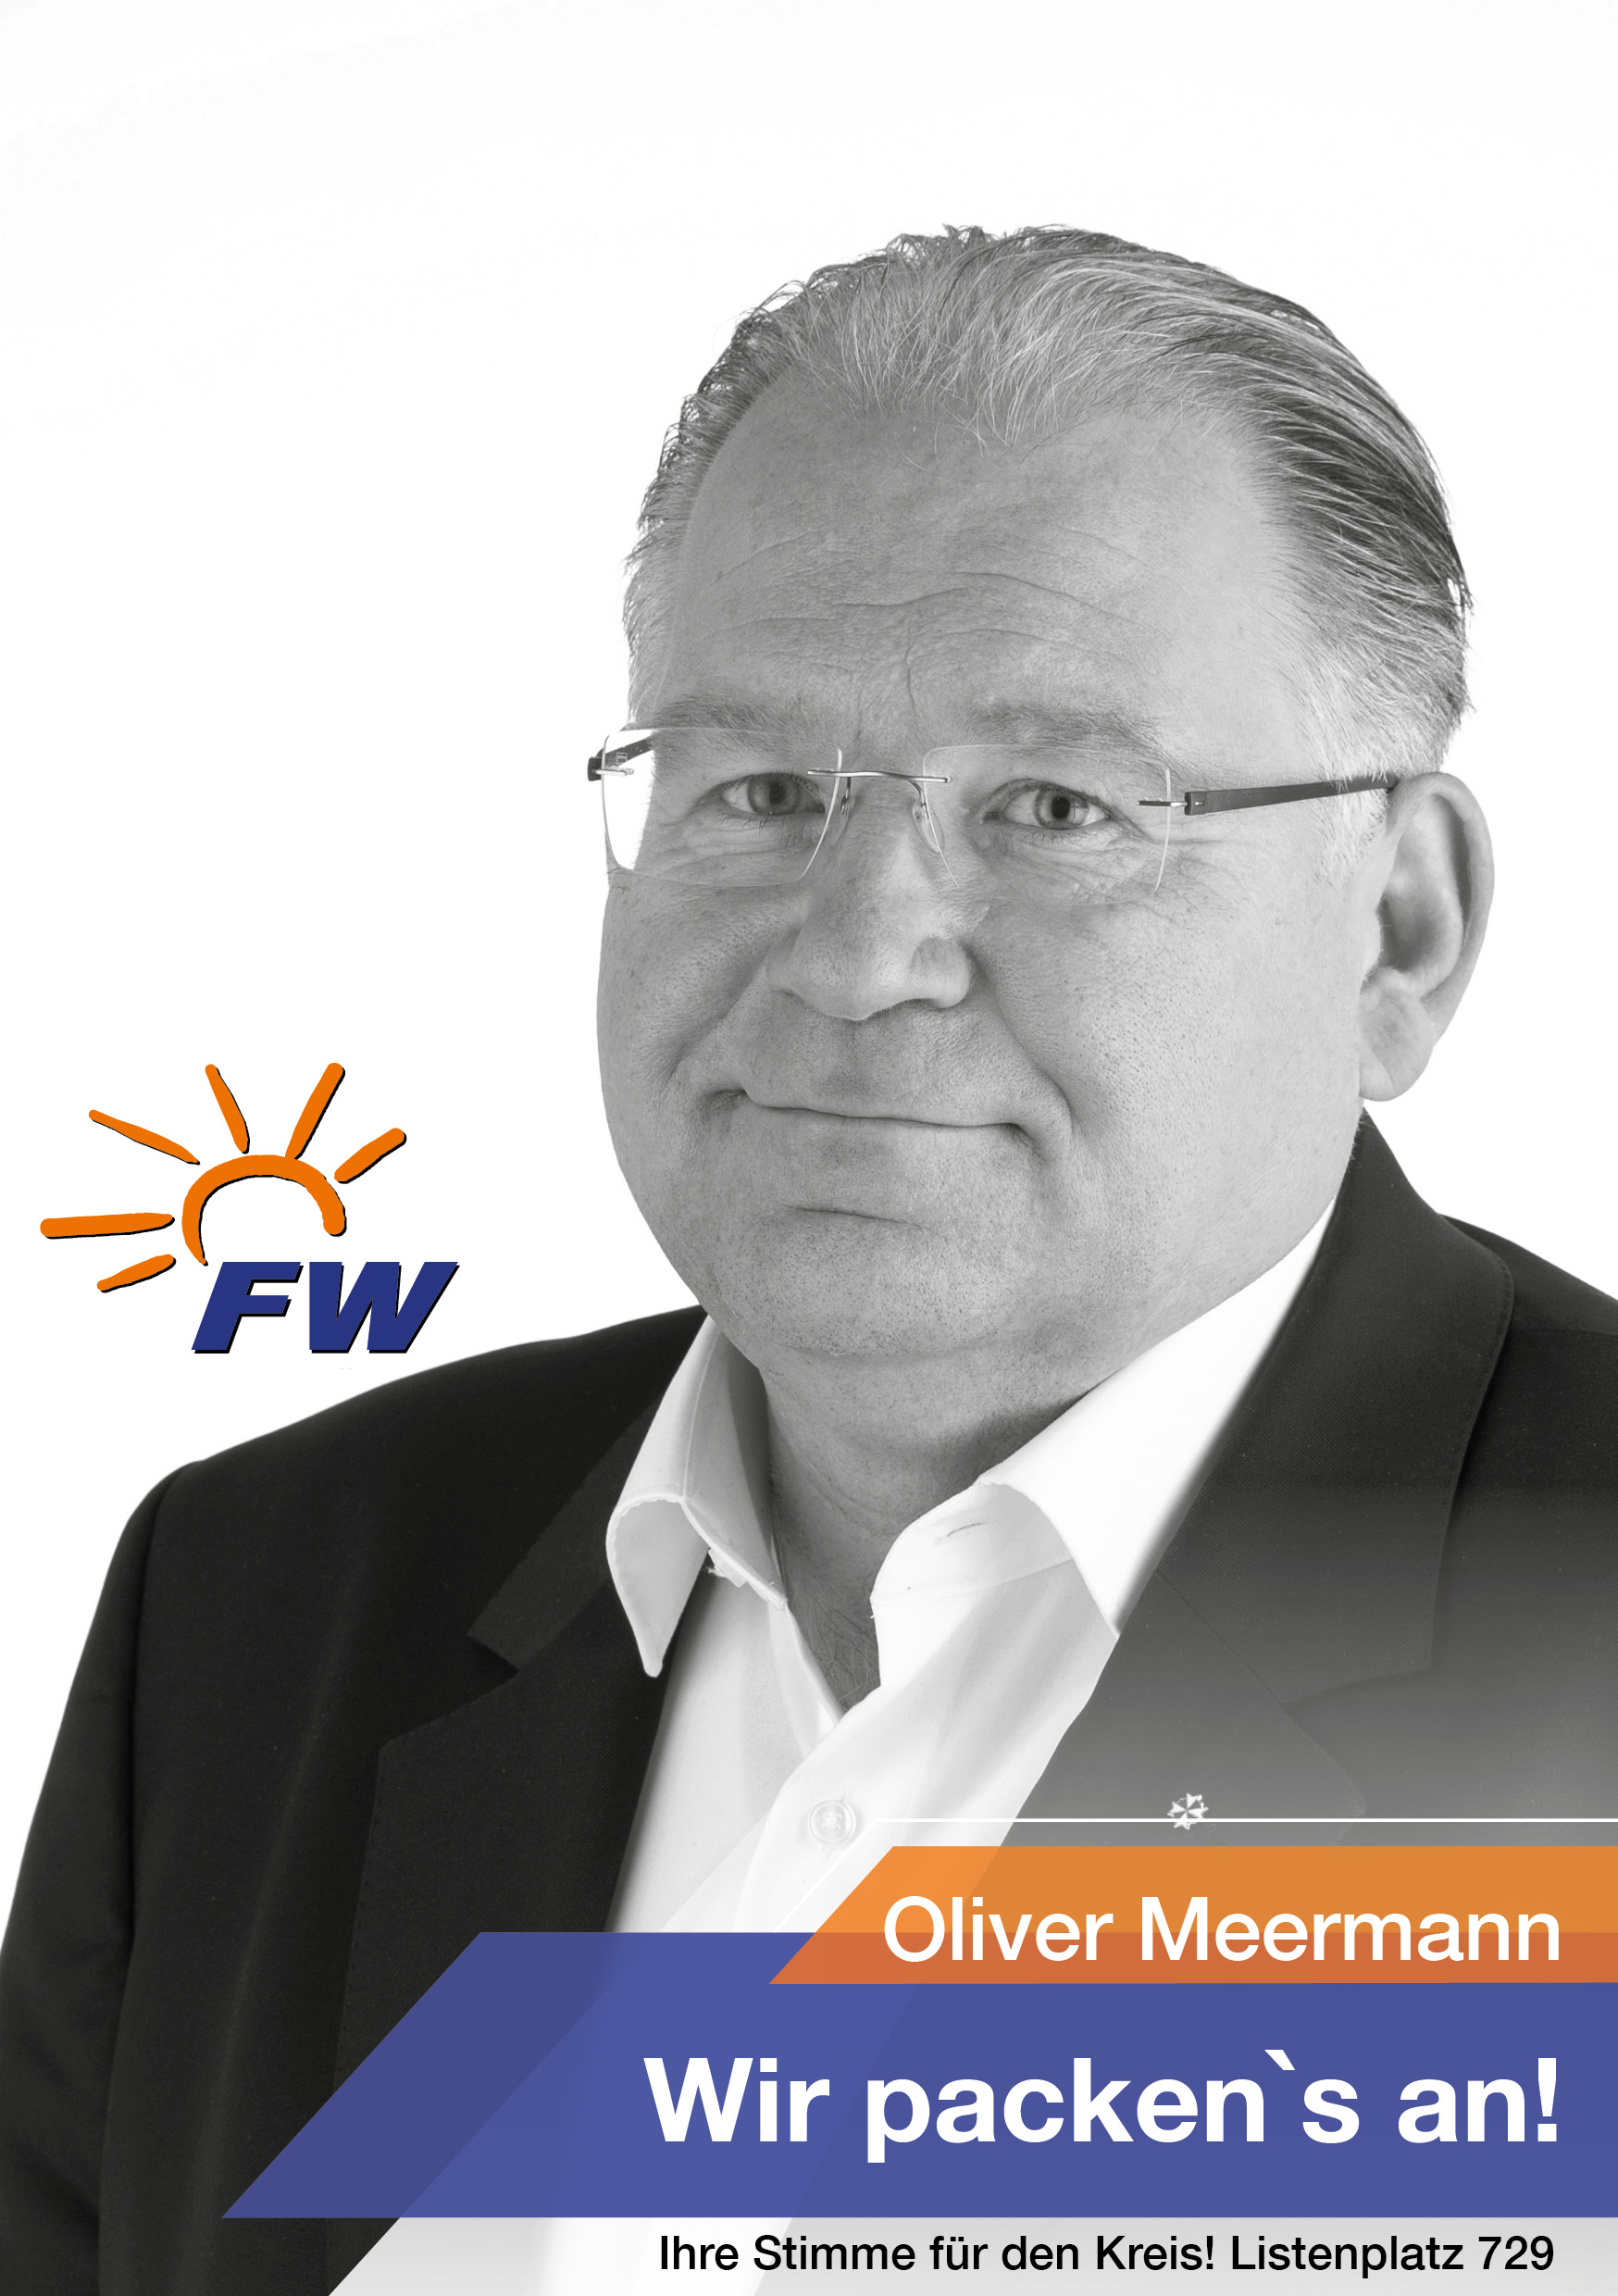 Oliver Meermann